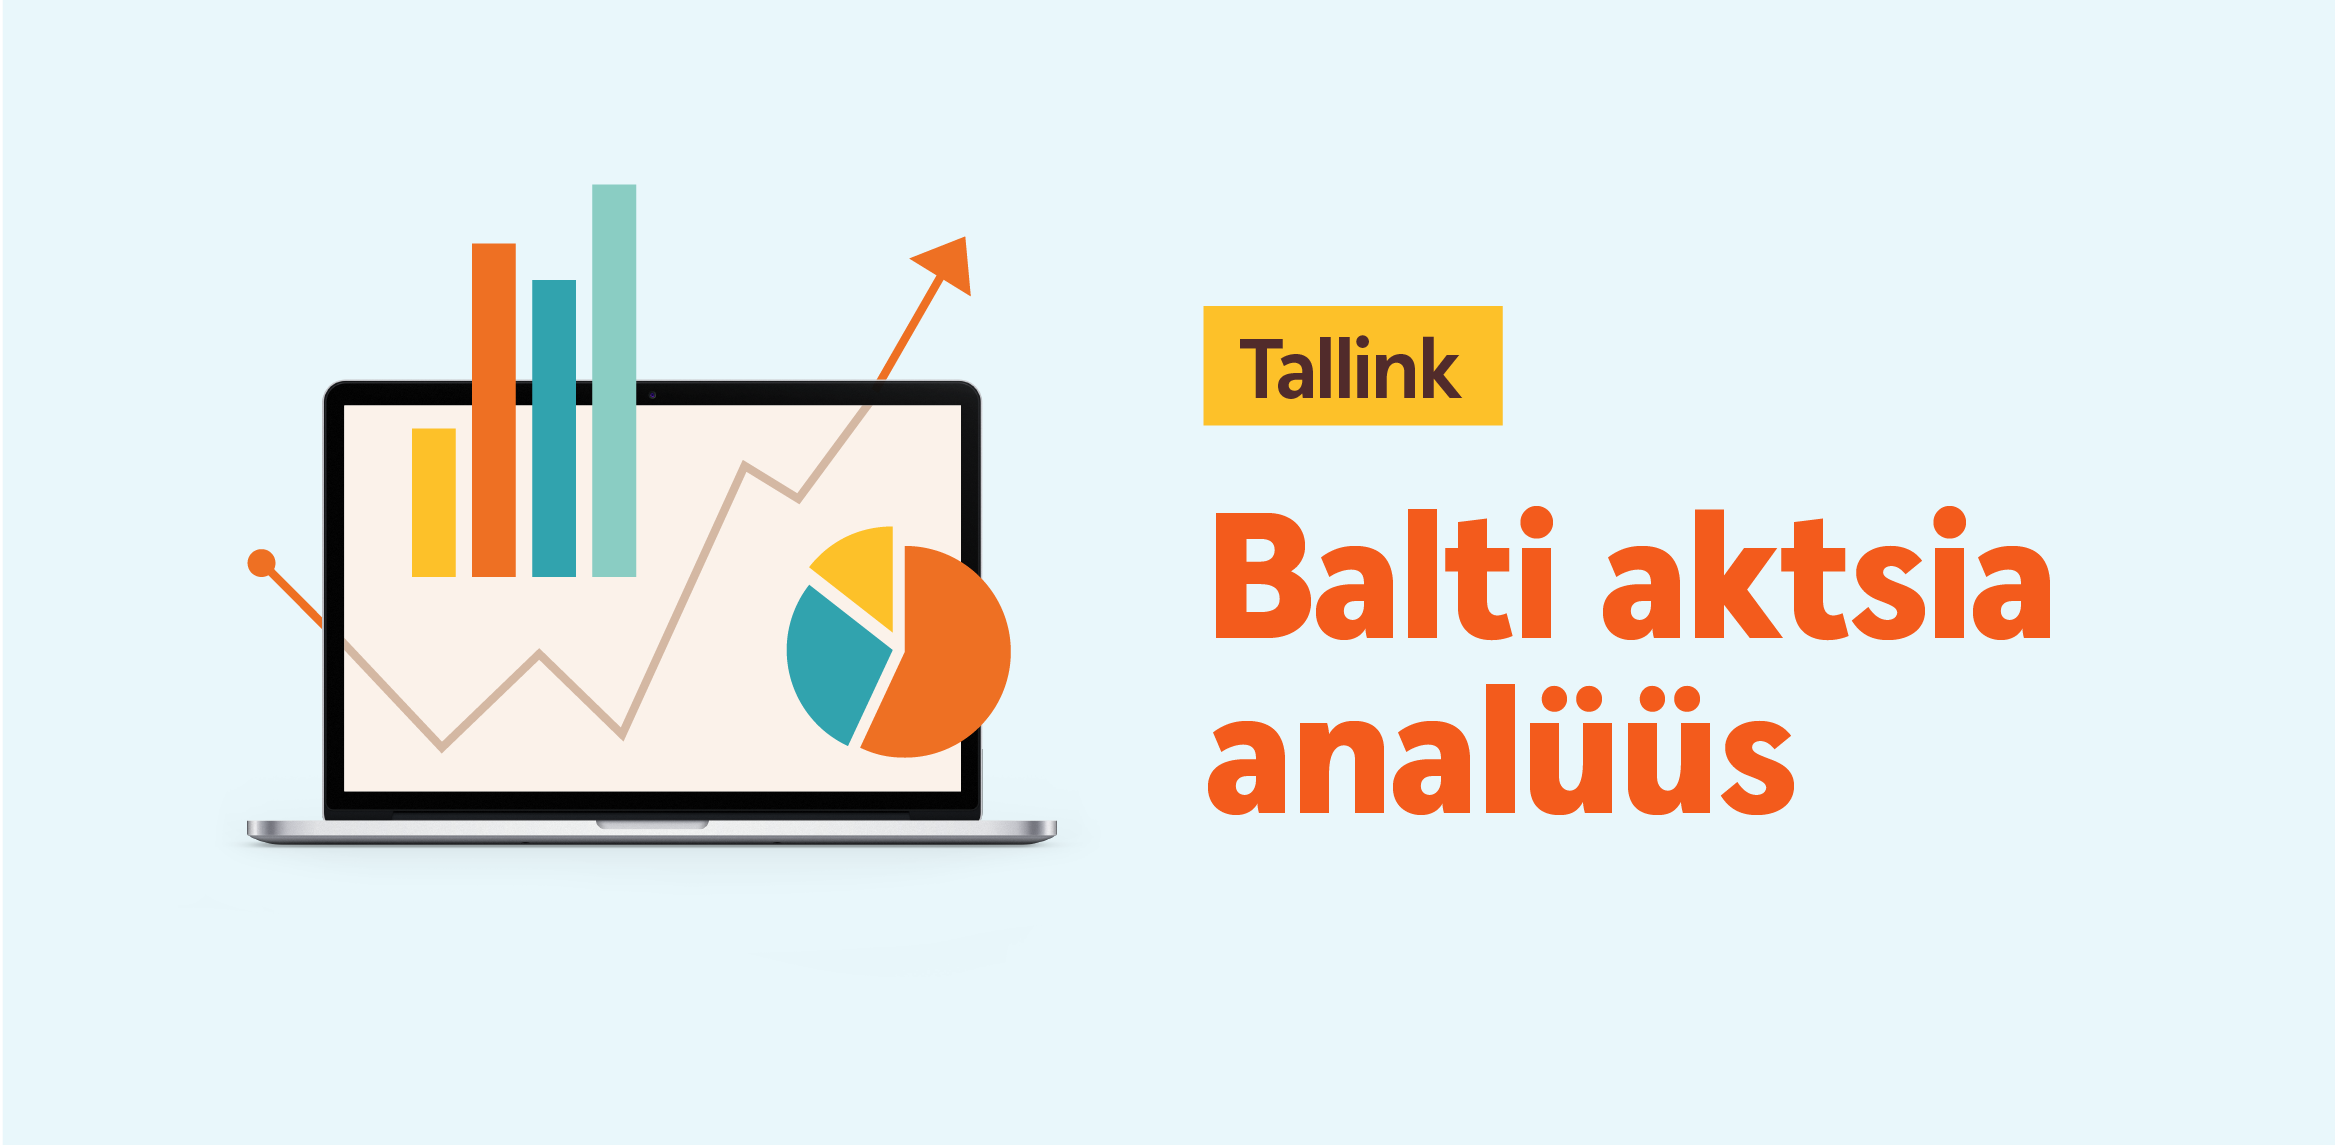 Tallink борется с упущенной выручкой за счёт сокращения расходов